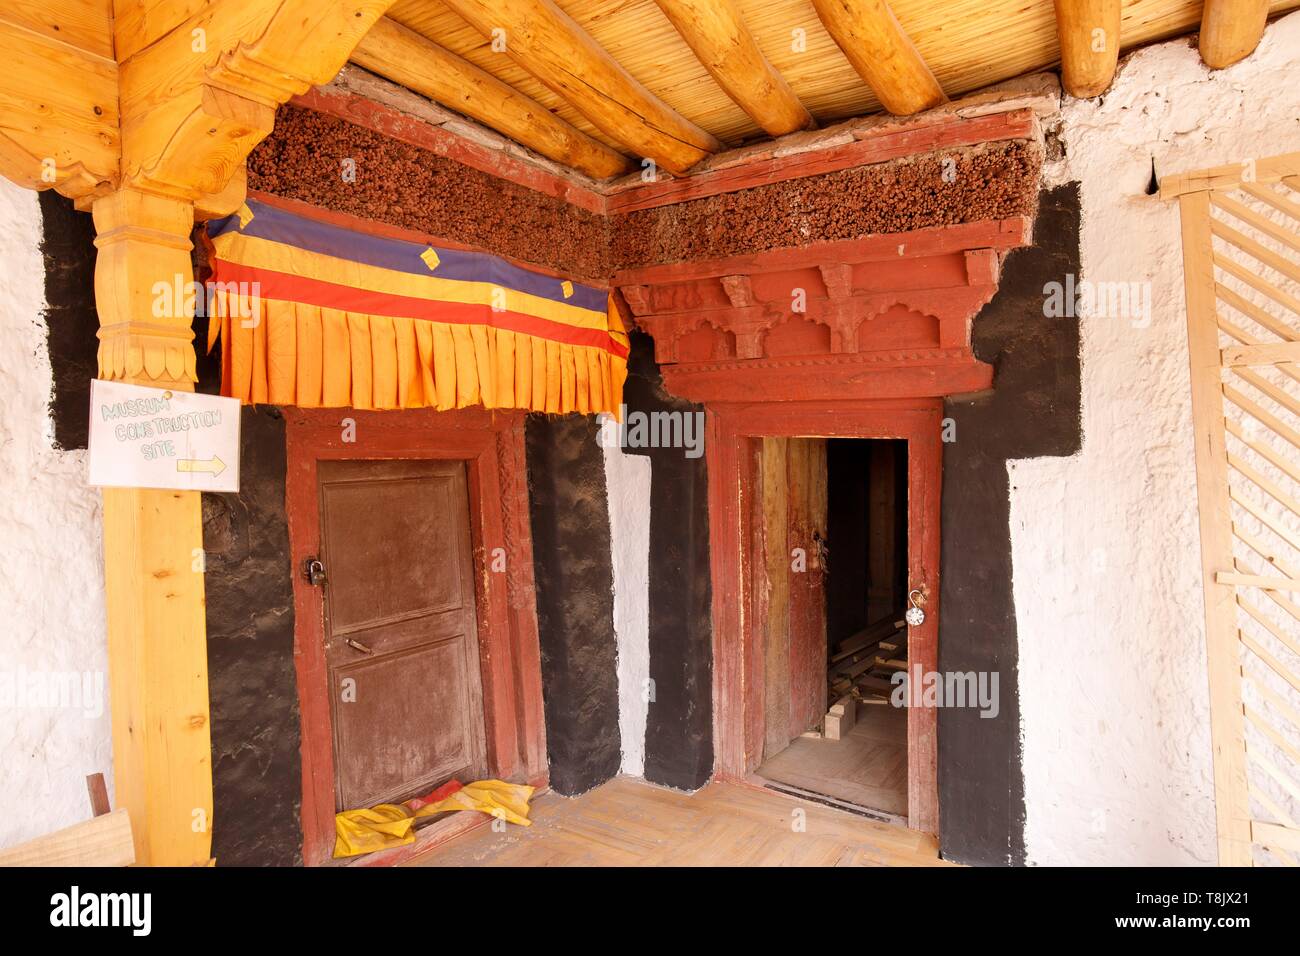 L'Inde, l'état de Jammu-et-Cachemire, Ladakh, Himalaya, vallée de l'Indus, Mâtho monastère (Gompa), entrée de la Mâtho museum avec ses faibles porte et son linteau en bois sculpté traditionnel Banque D'Images